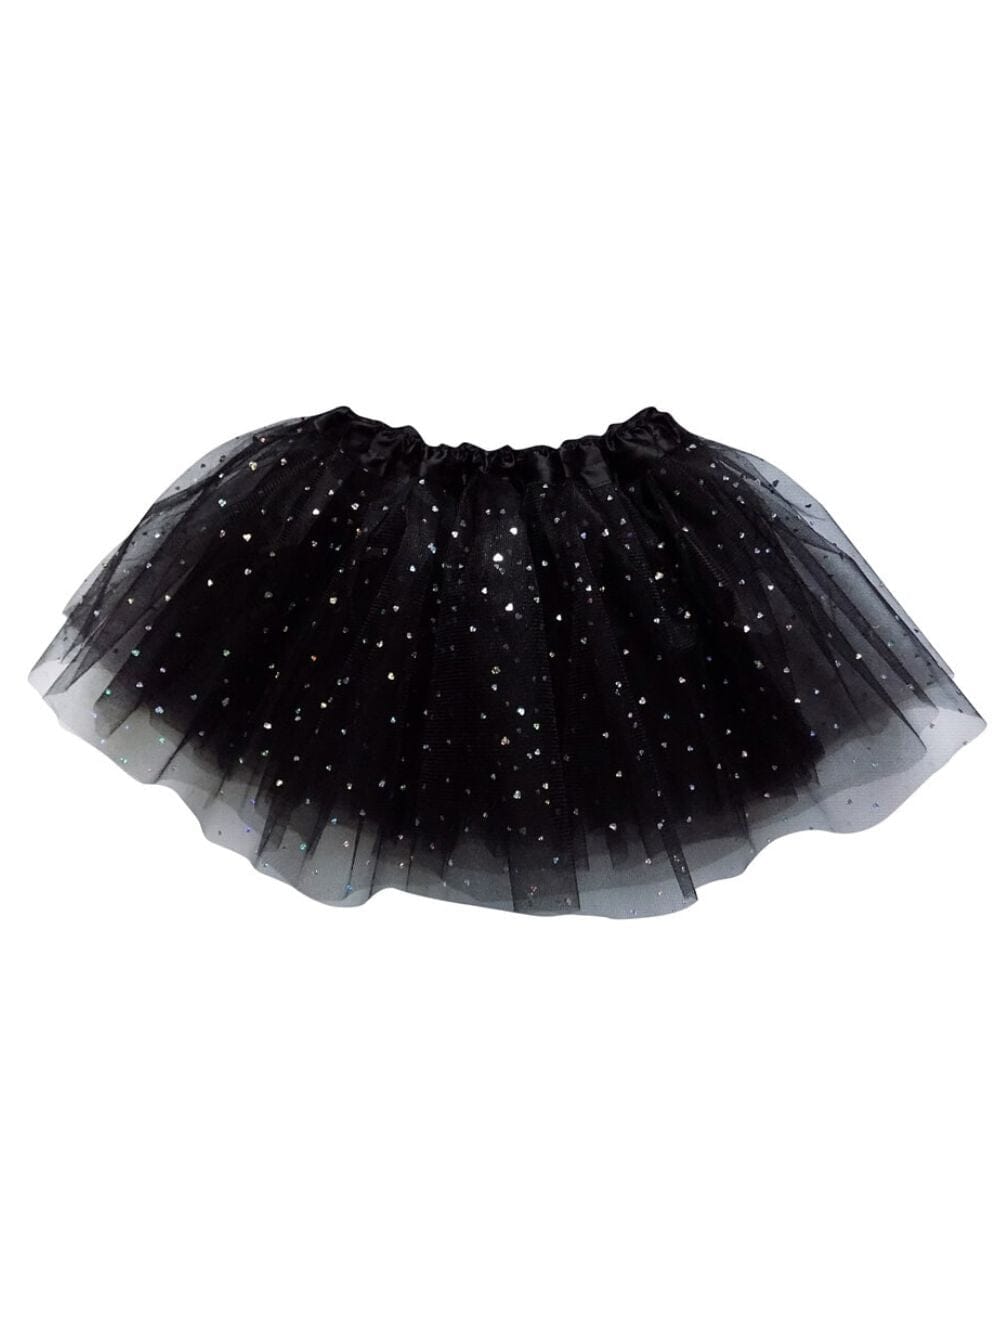 Black Sequin Heart Valentine's Day Tutu Skirt Costume for Toddler, Girls, Women, Plus - Sydney So Sweet